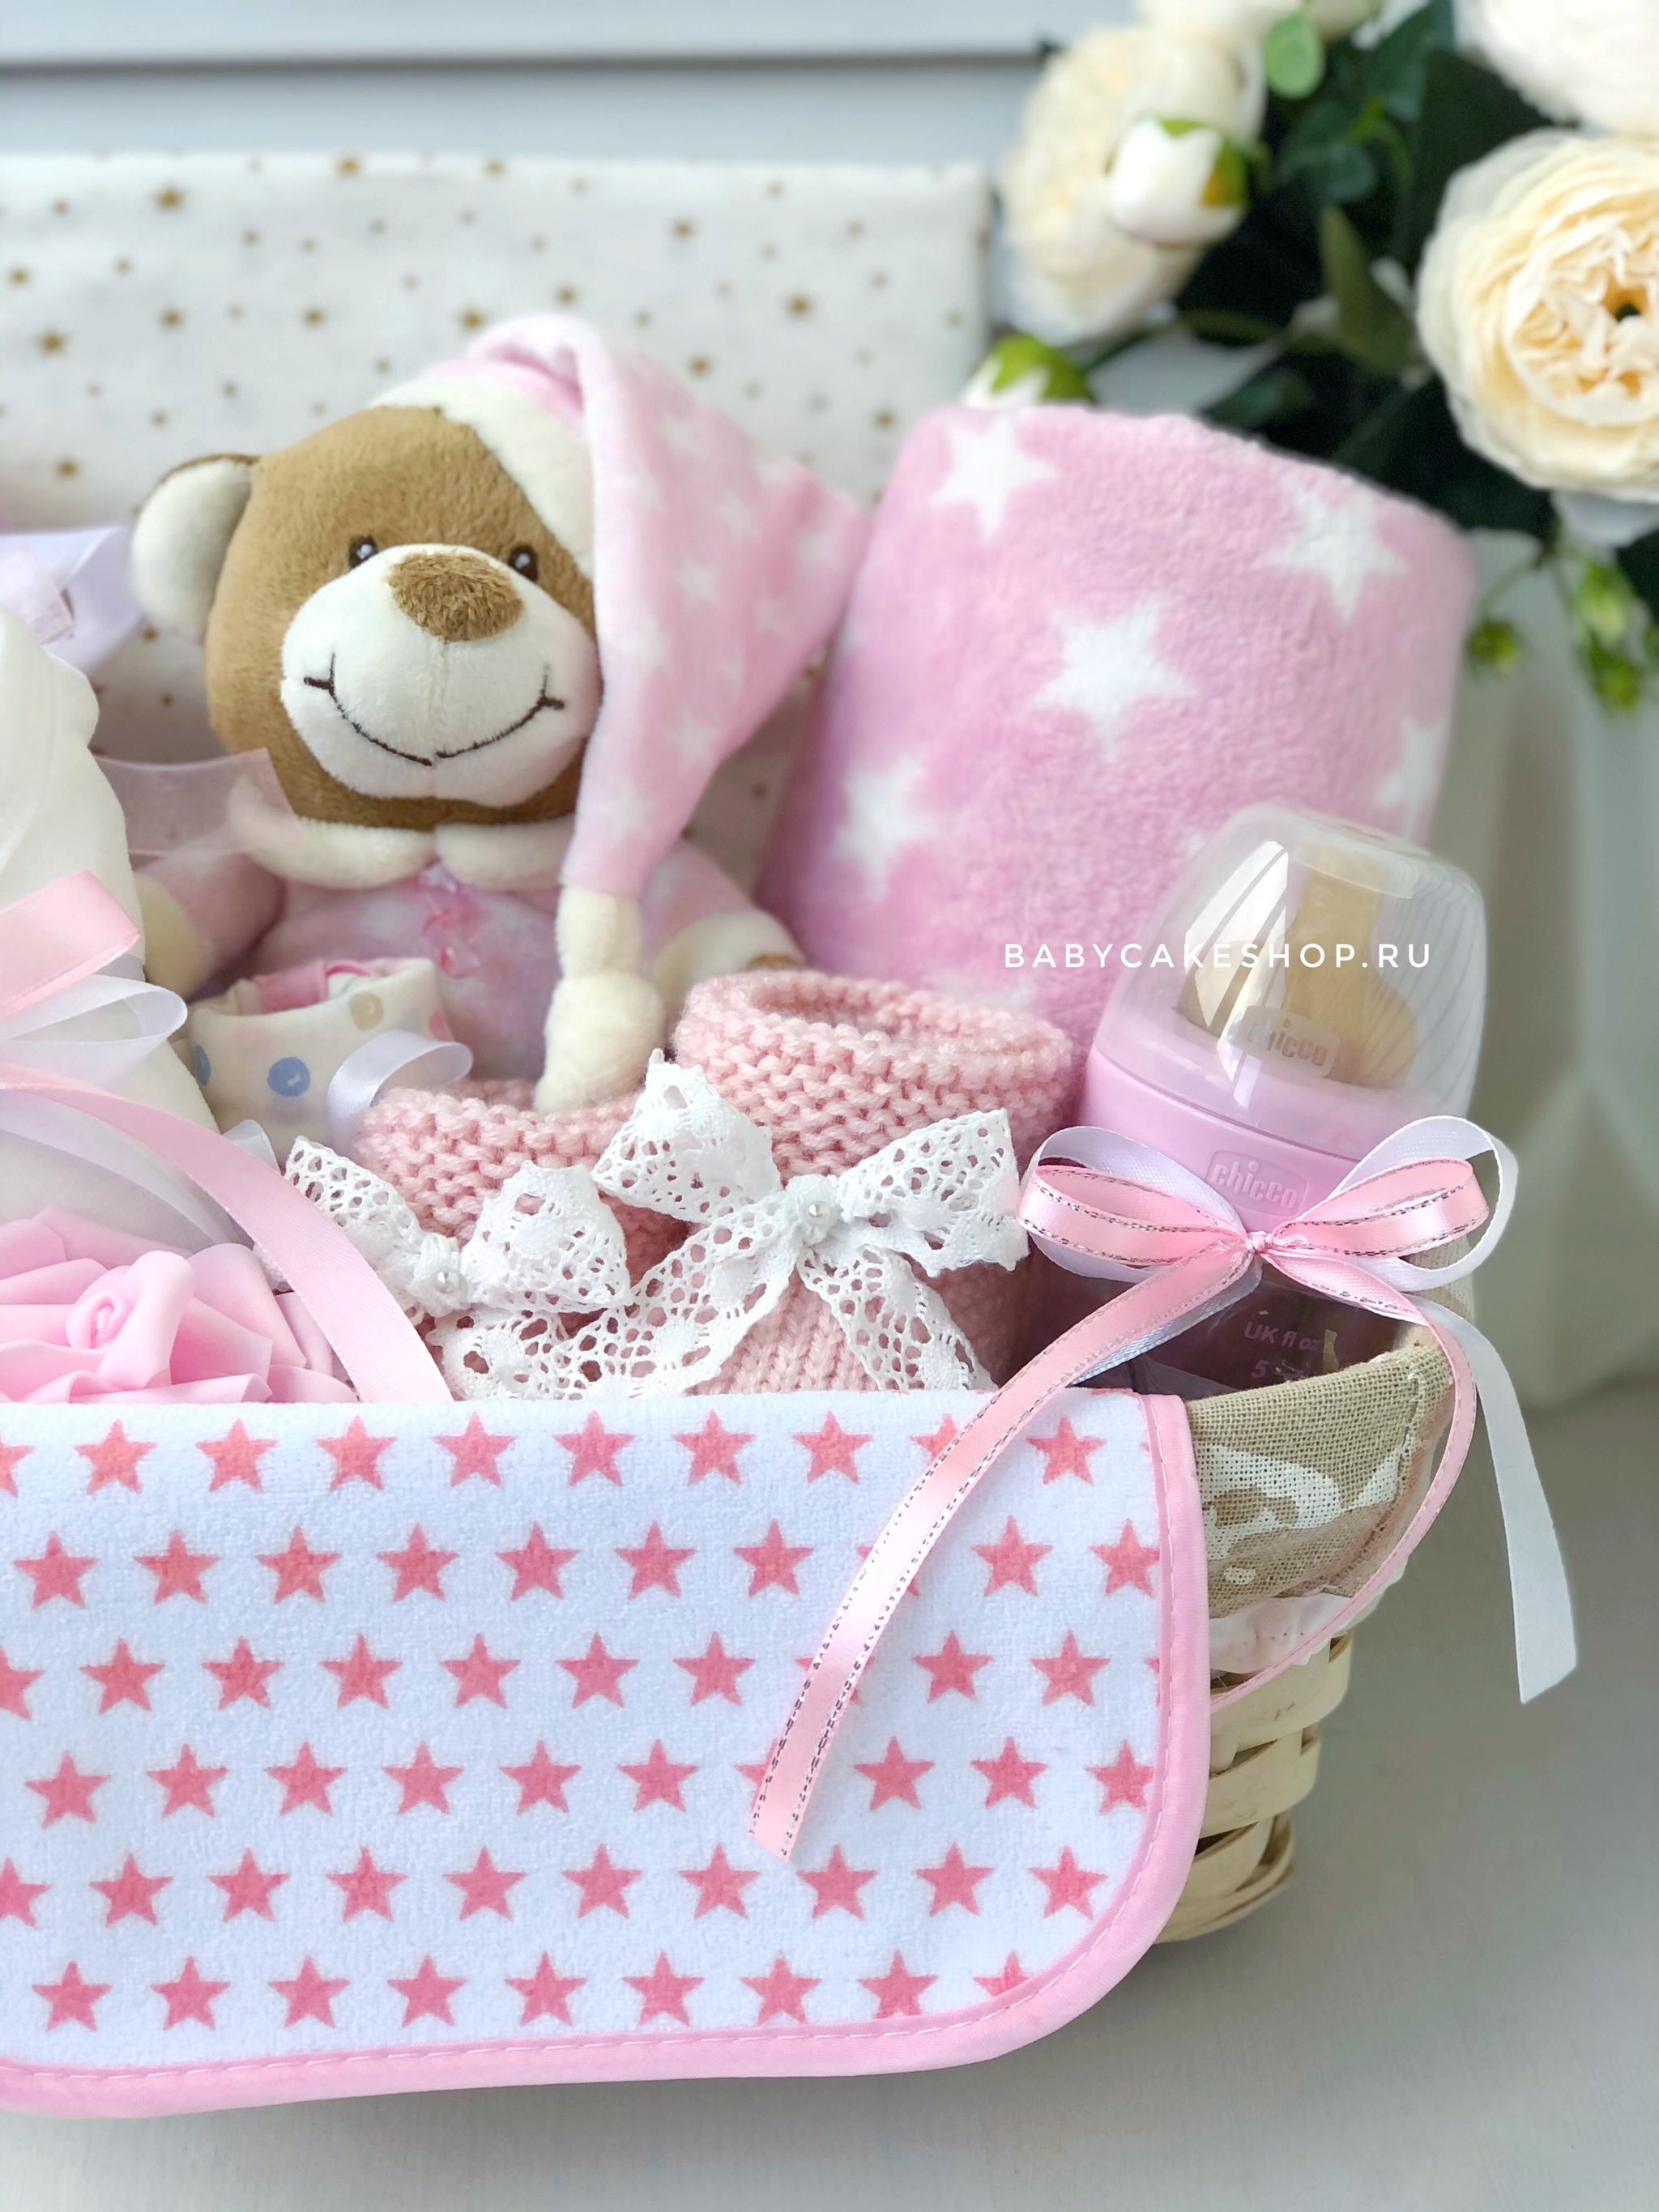 Подарки для обустройства детской комнаты, принадлежащей новорожденной девочке